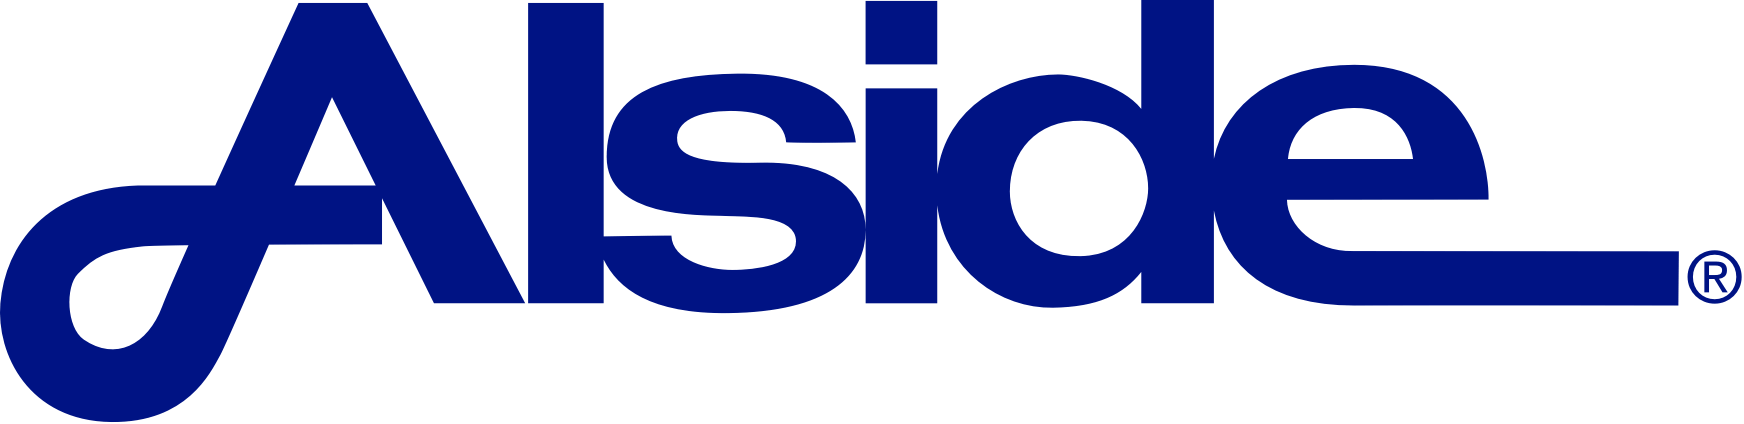 Alside-logo-2